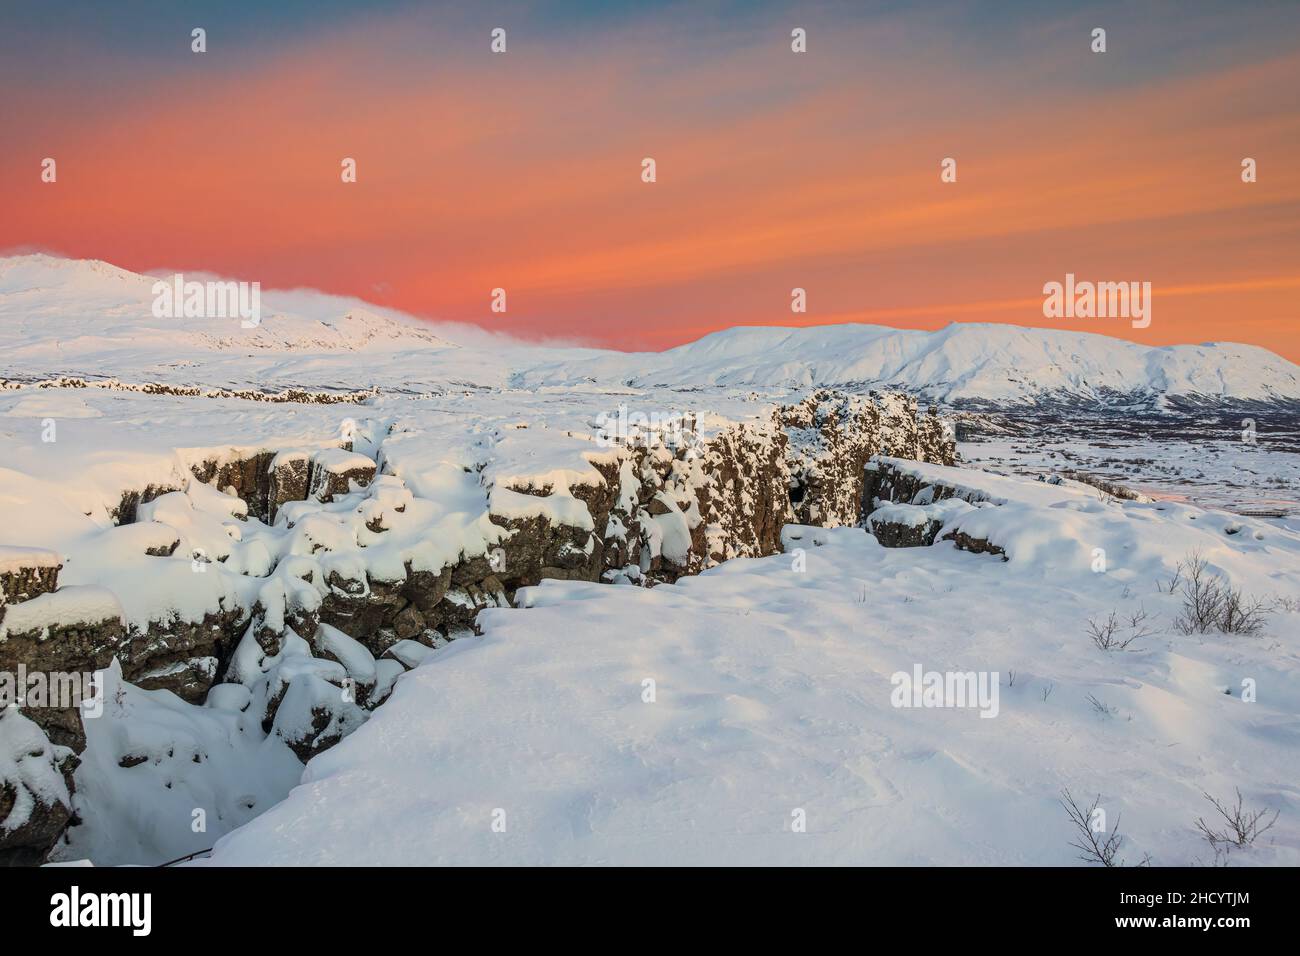 L'aube dans le parc national de Thingvellir apporte le ciel rouge sur une neige plus blanche. Banque D'Images